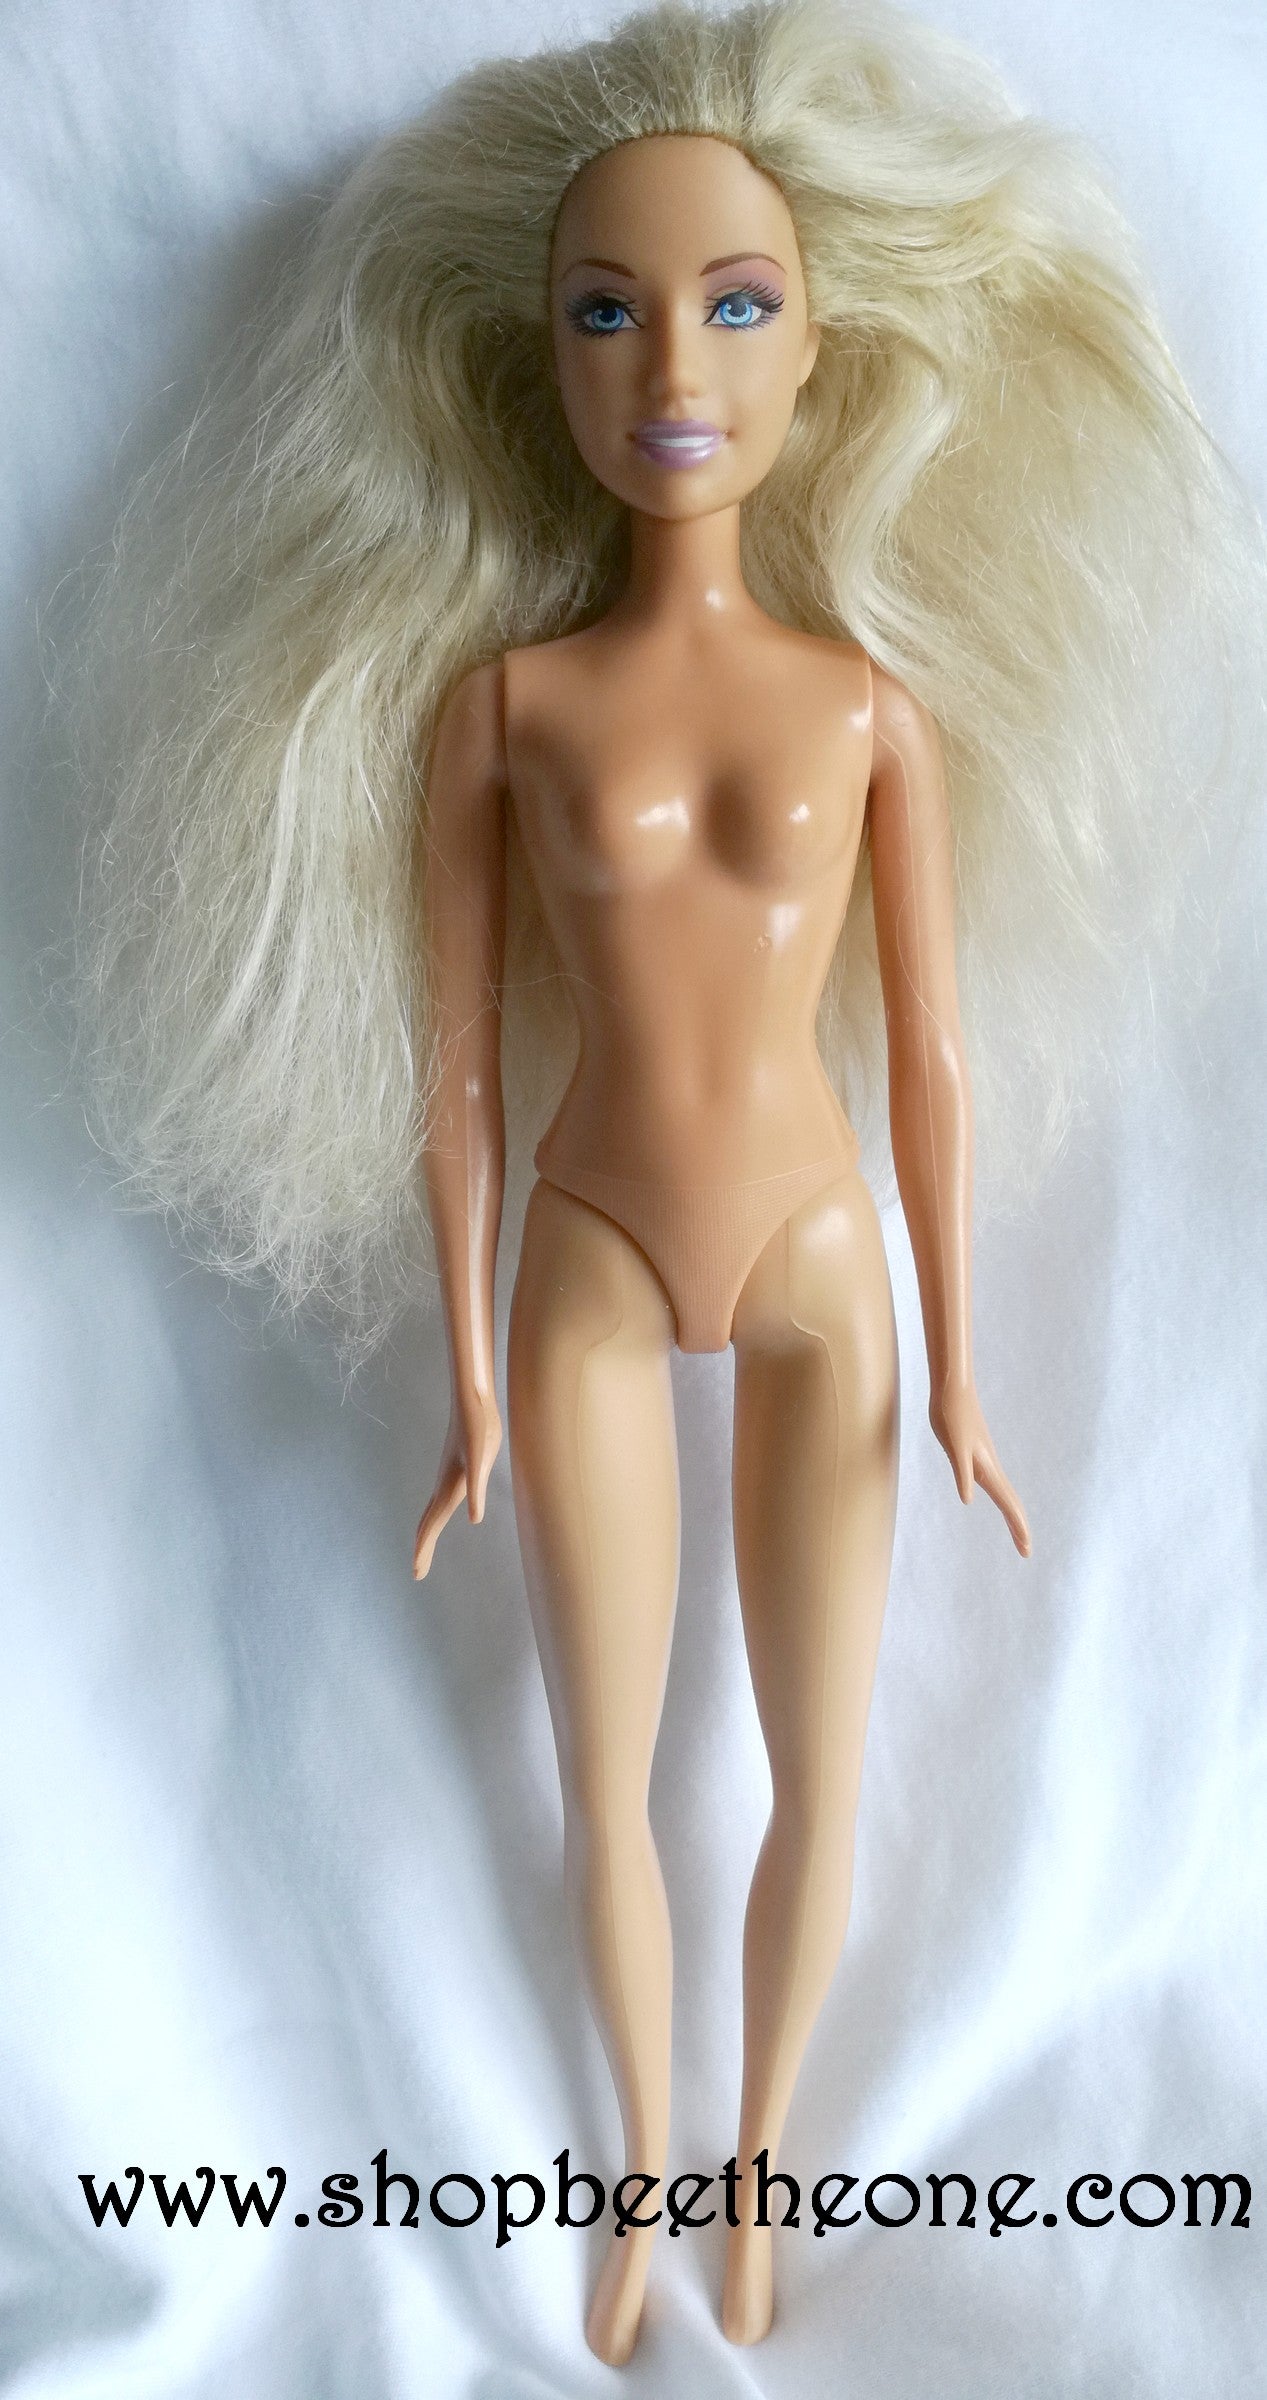 Barbie Coeur de Princesse (The Princess and the Pauper) - Princesse Anneliese - poupée et  bracelet - Mattel 2007 - Poupée - vêtements